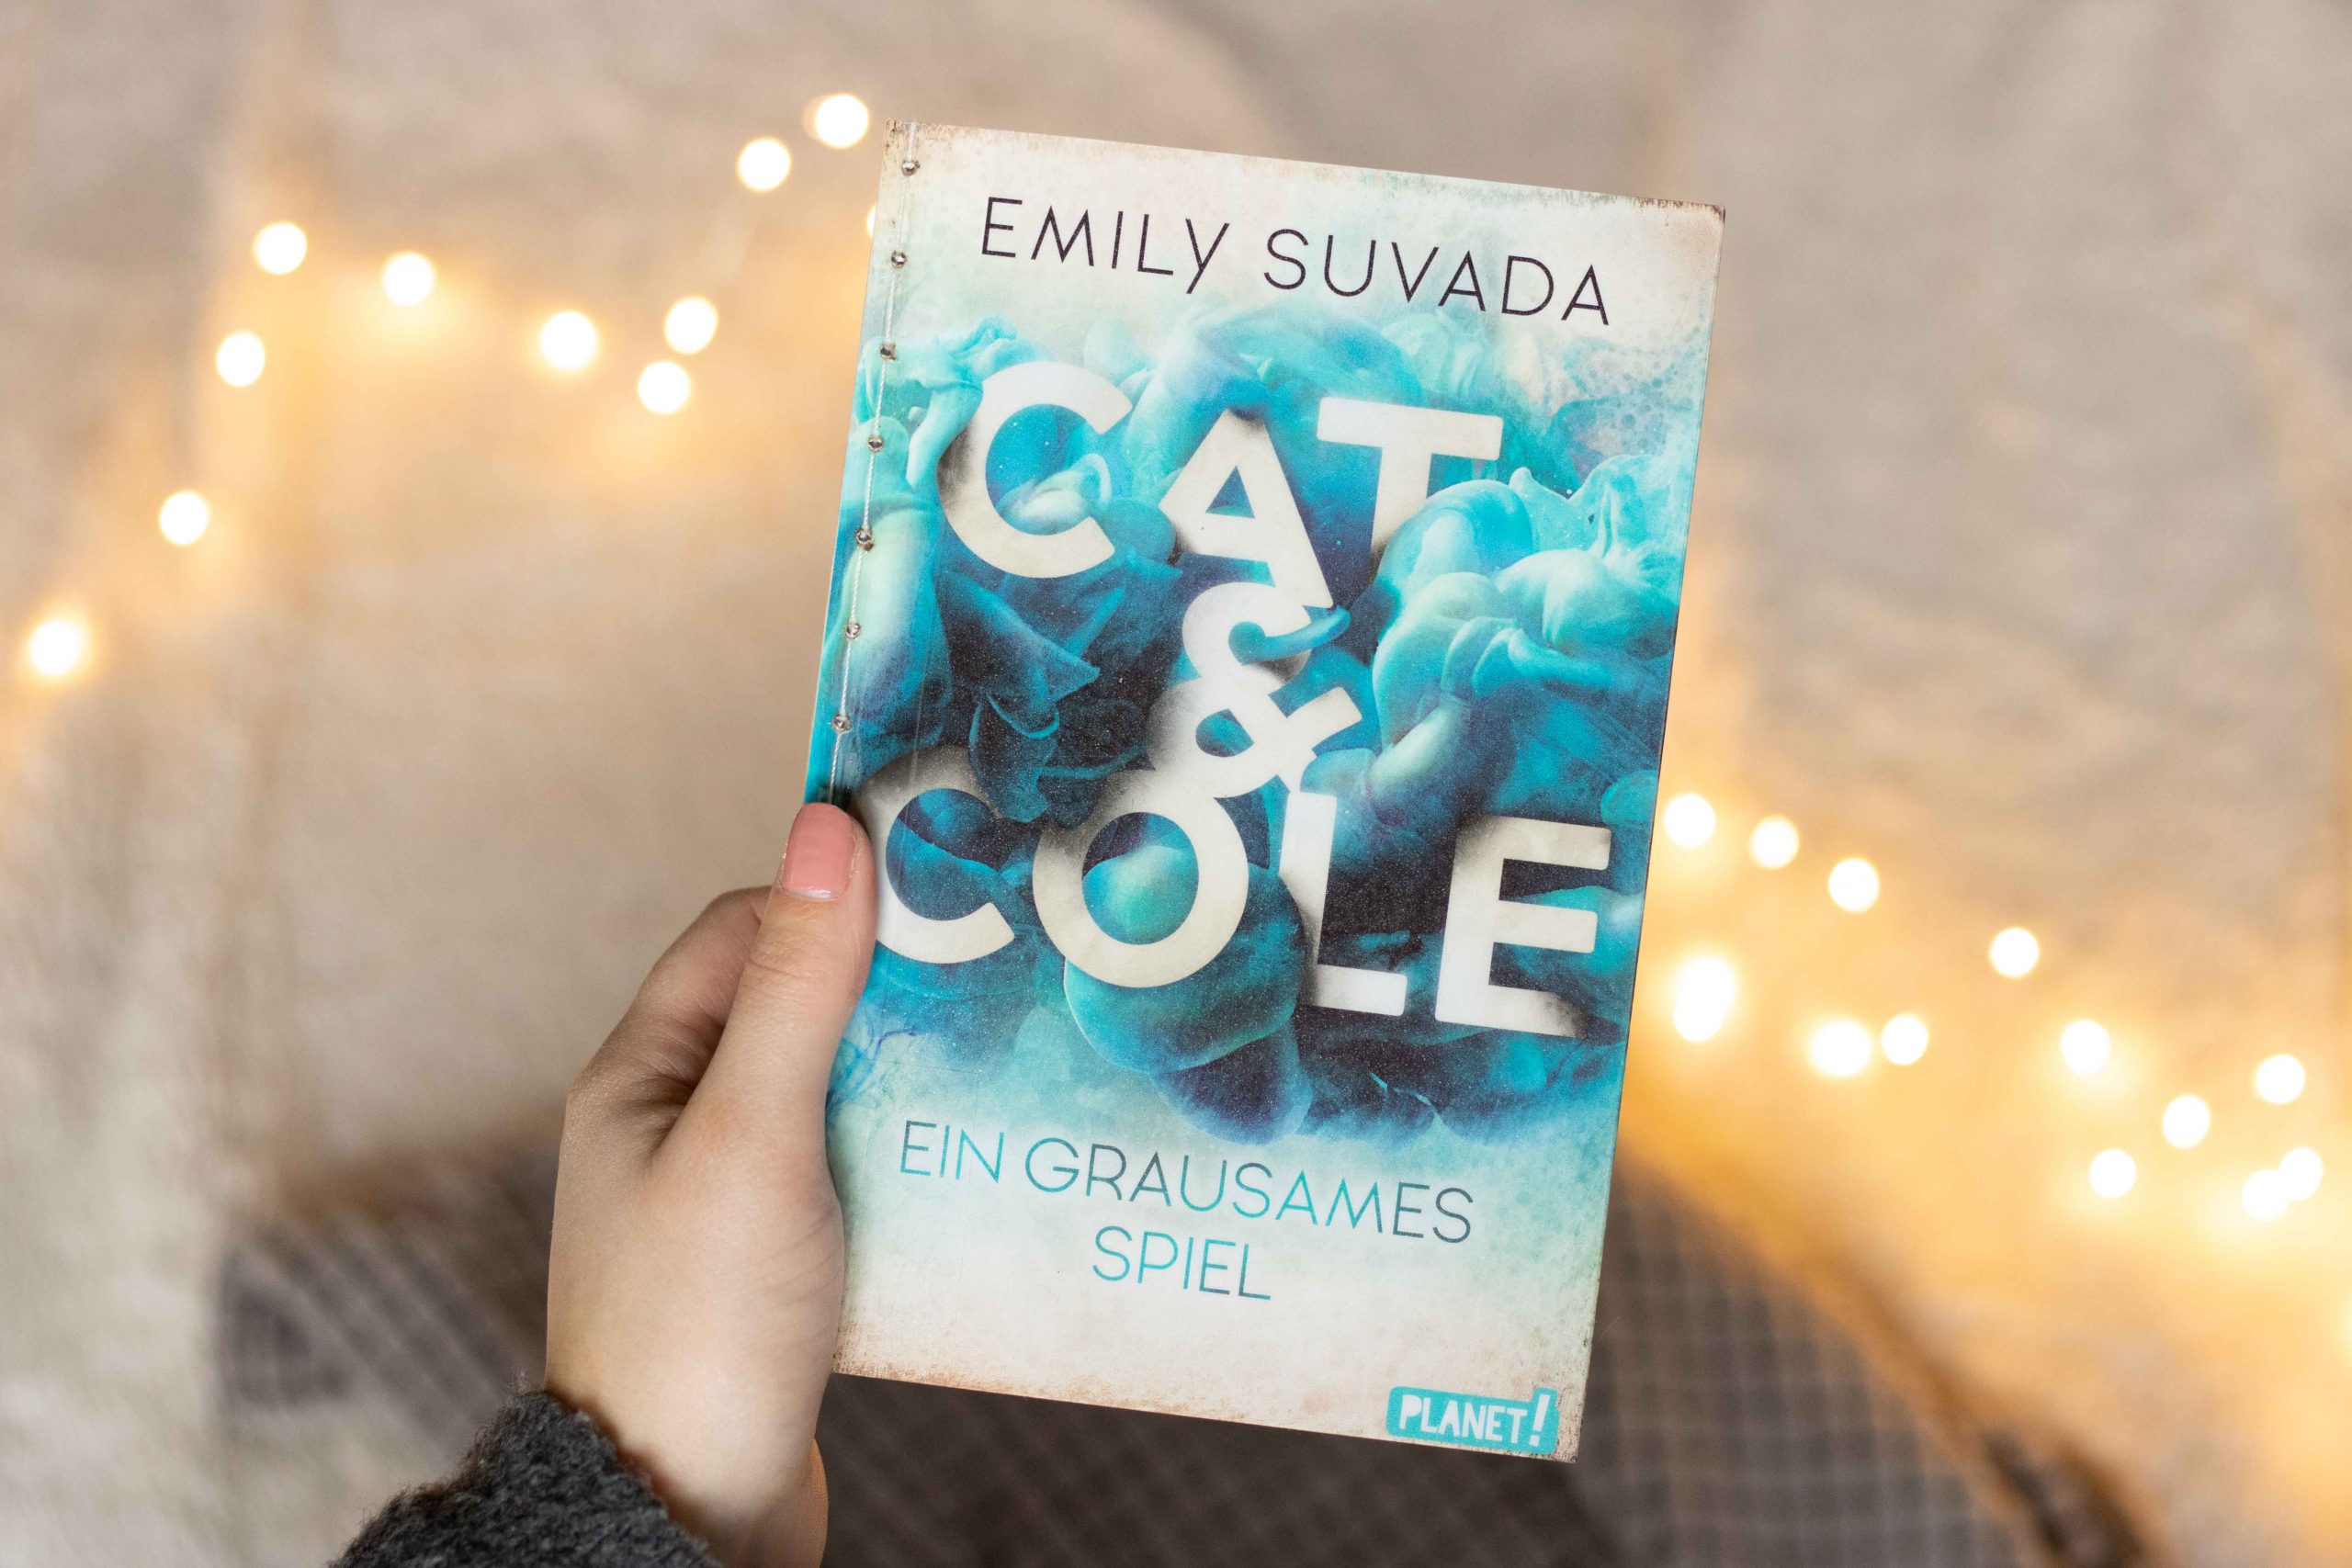 Cat & Cole – Ein grausames Spiel | Emily Suvada